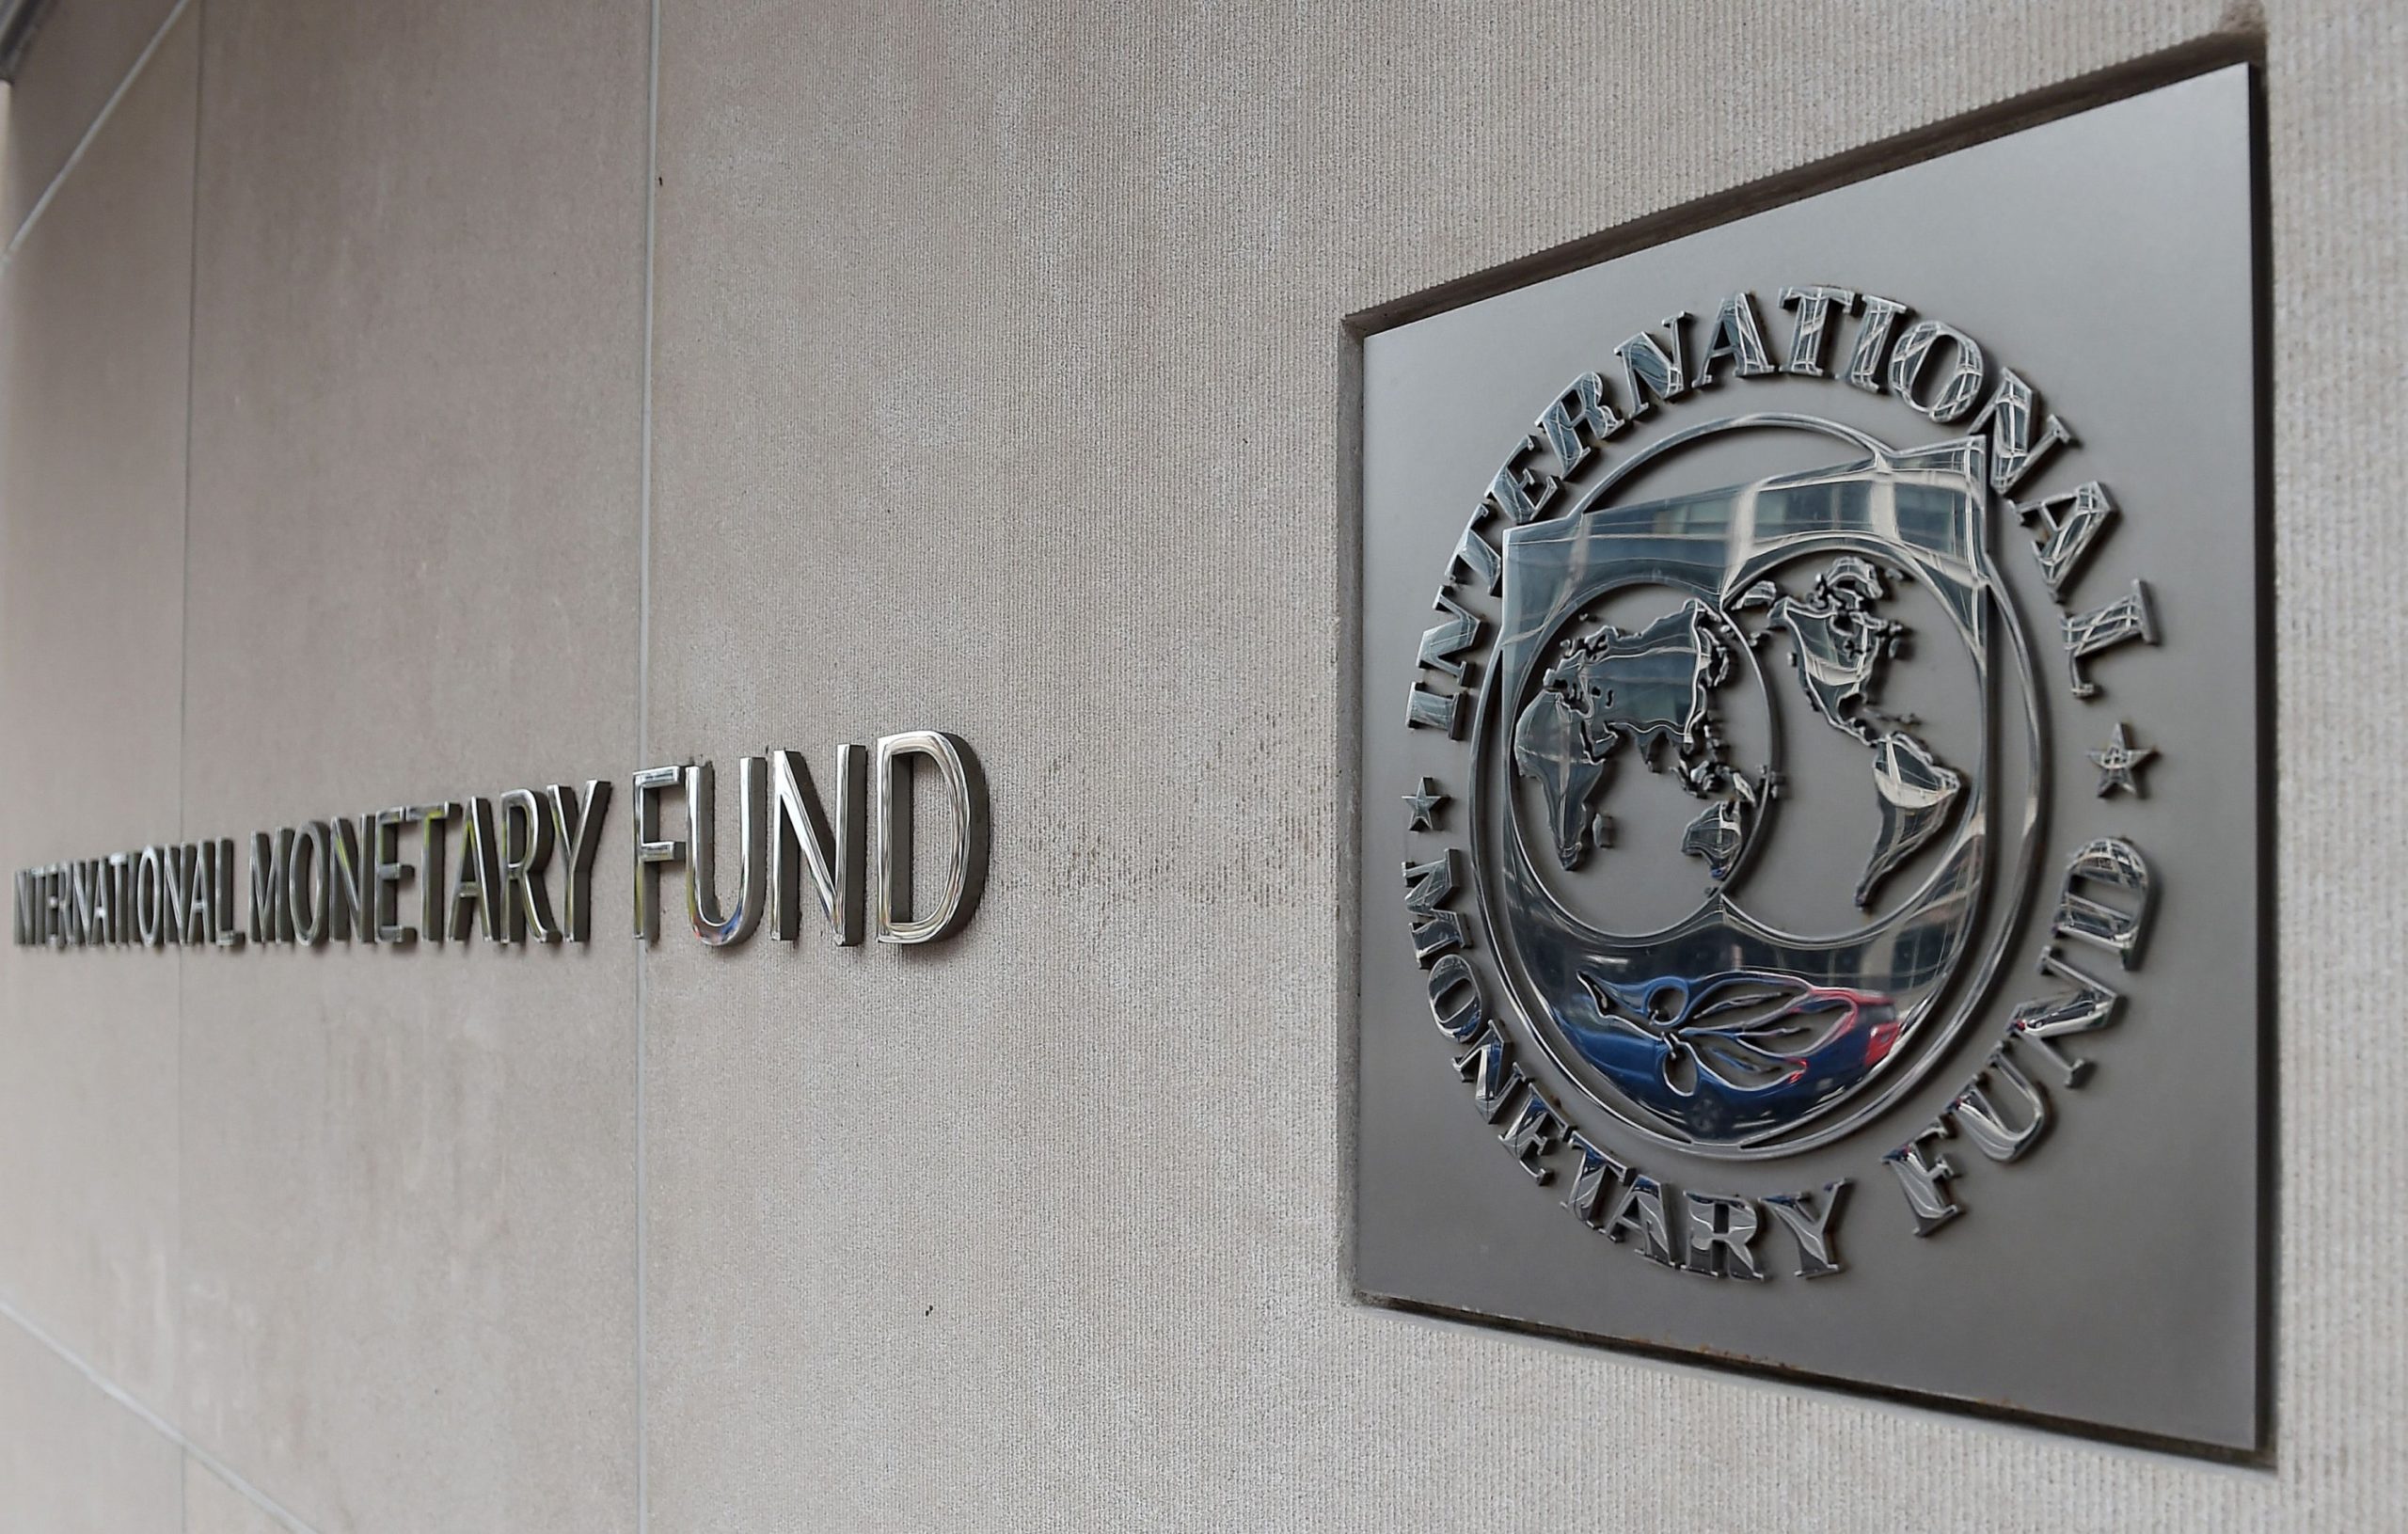 هل يستطيع صندوق النقد الدولي حل المشاكل الاقتصادية العالمية؟ - دور صندوق النقد الدولي في تقديم الحلول للقضايا الاقتصادية العالمية